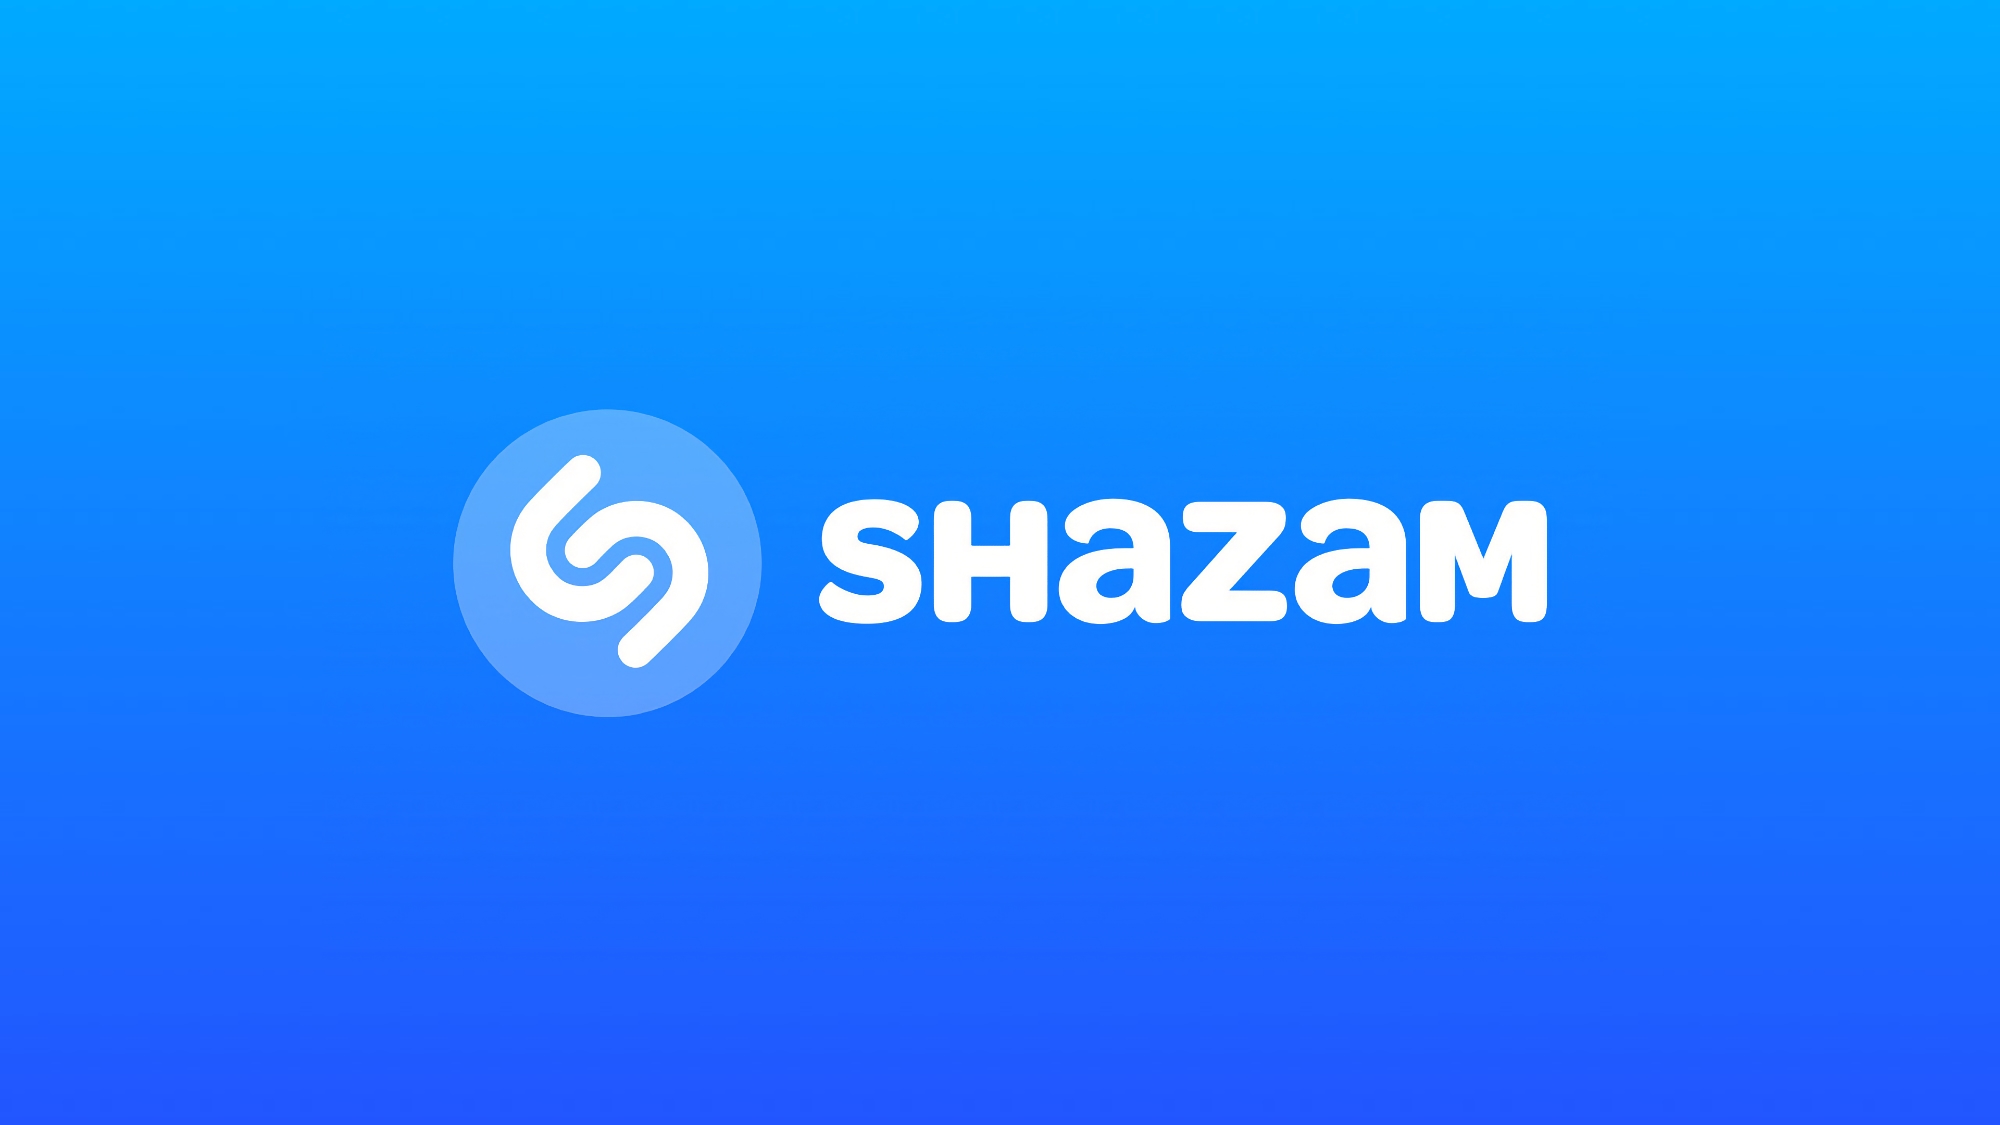 Shazam apprend à reconnaître la musique dans TikTok, Instagram, YouTube et d'autres applications